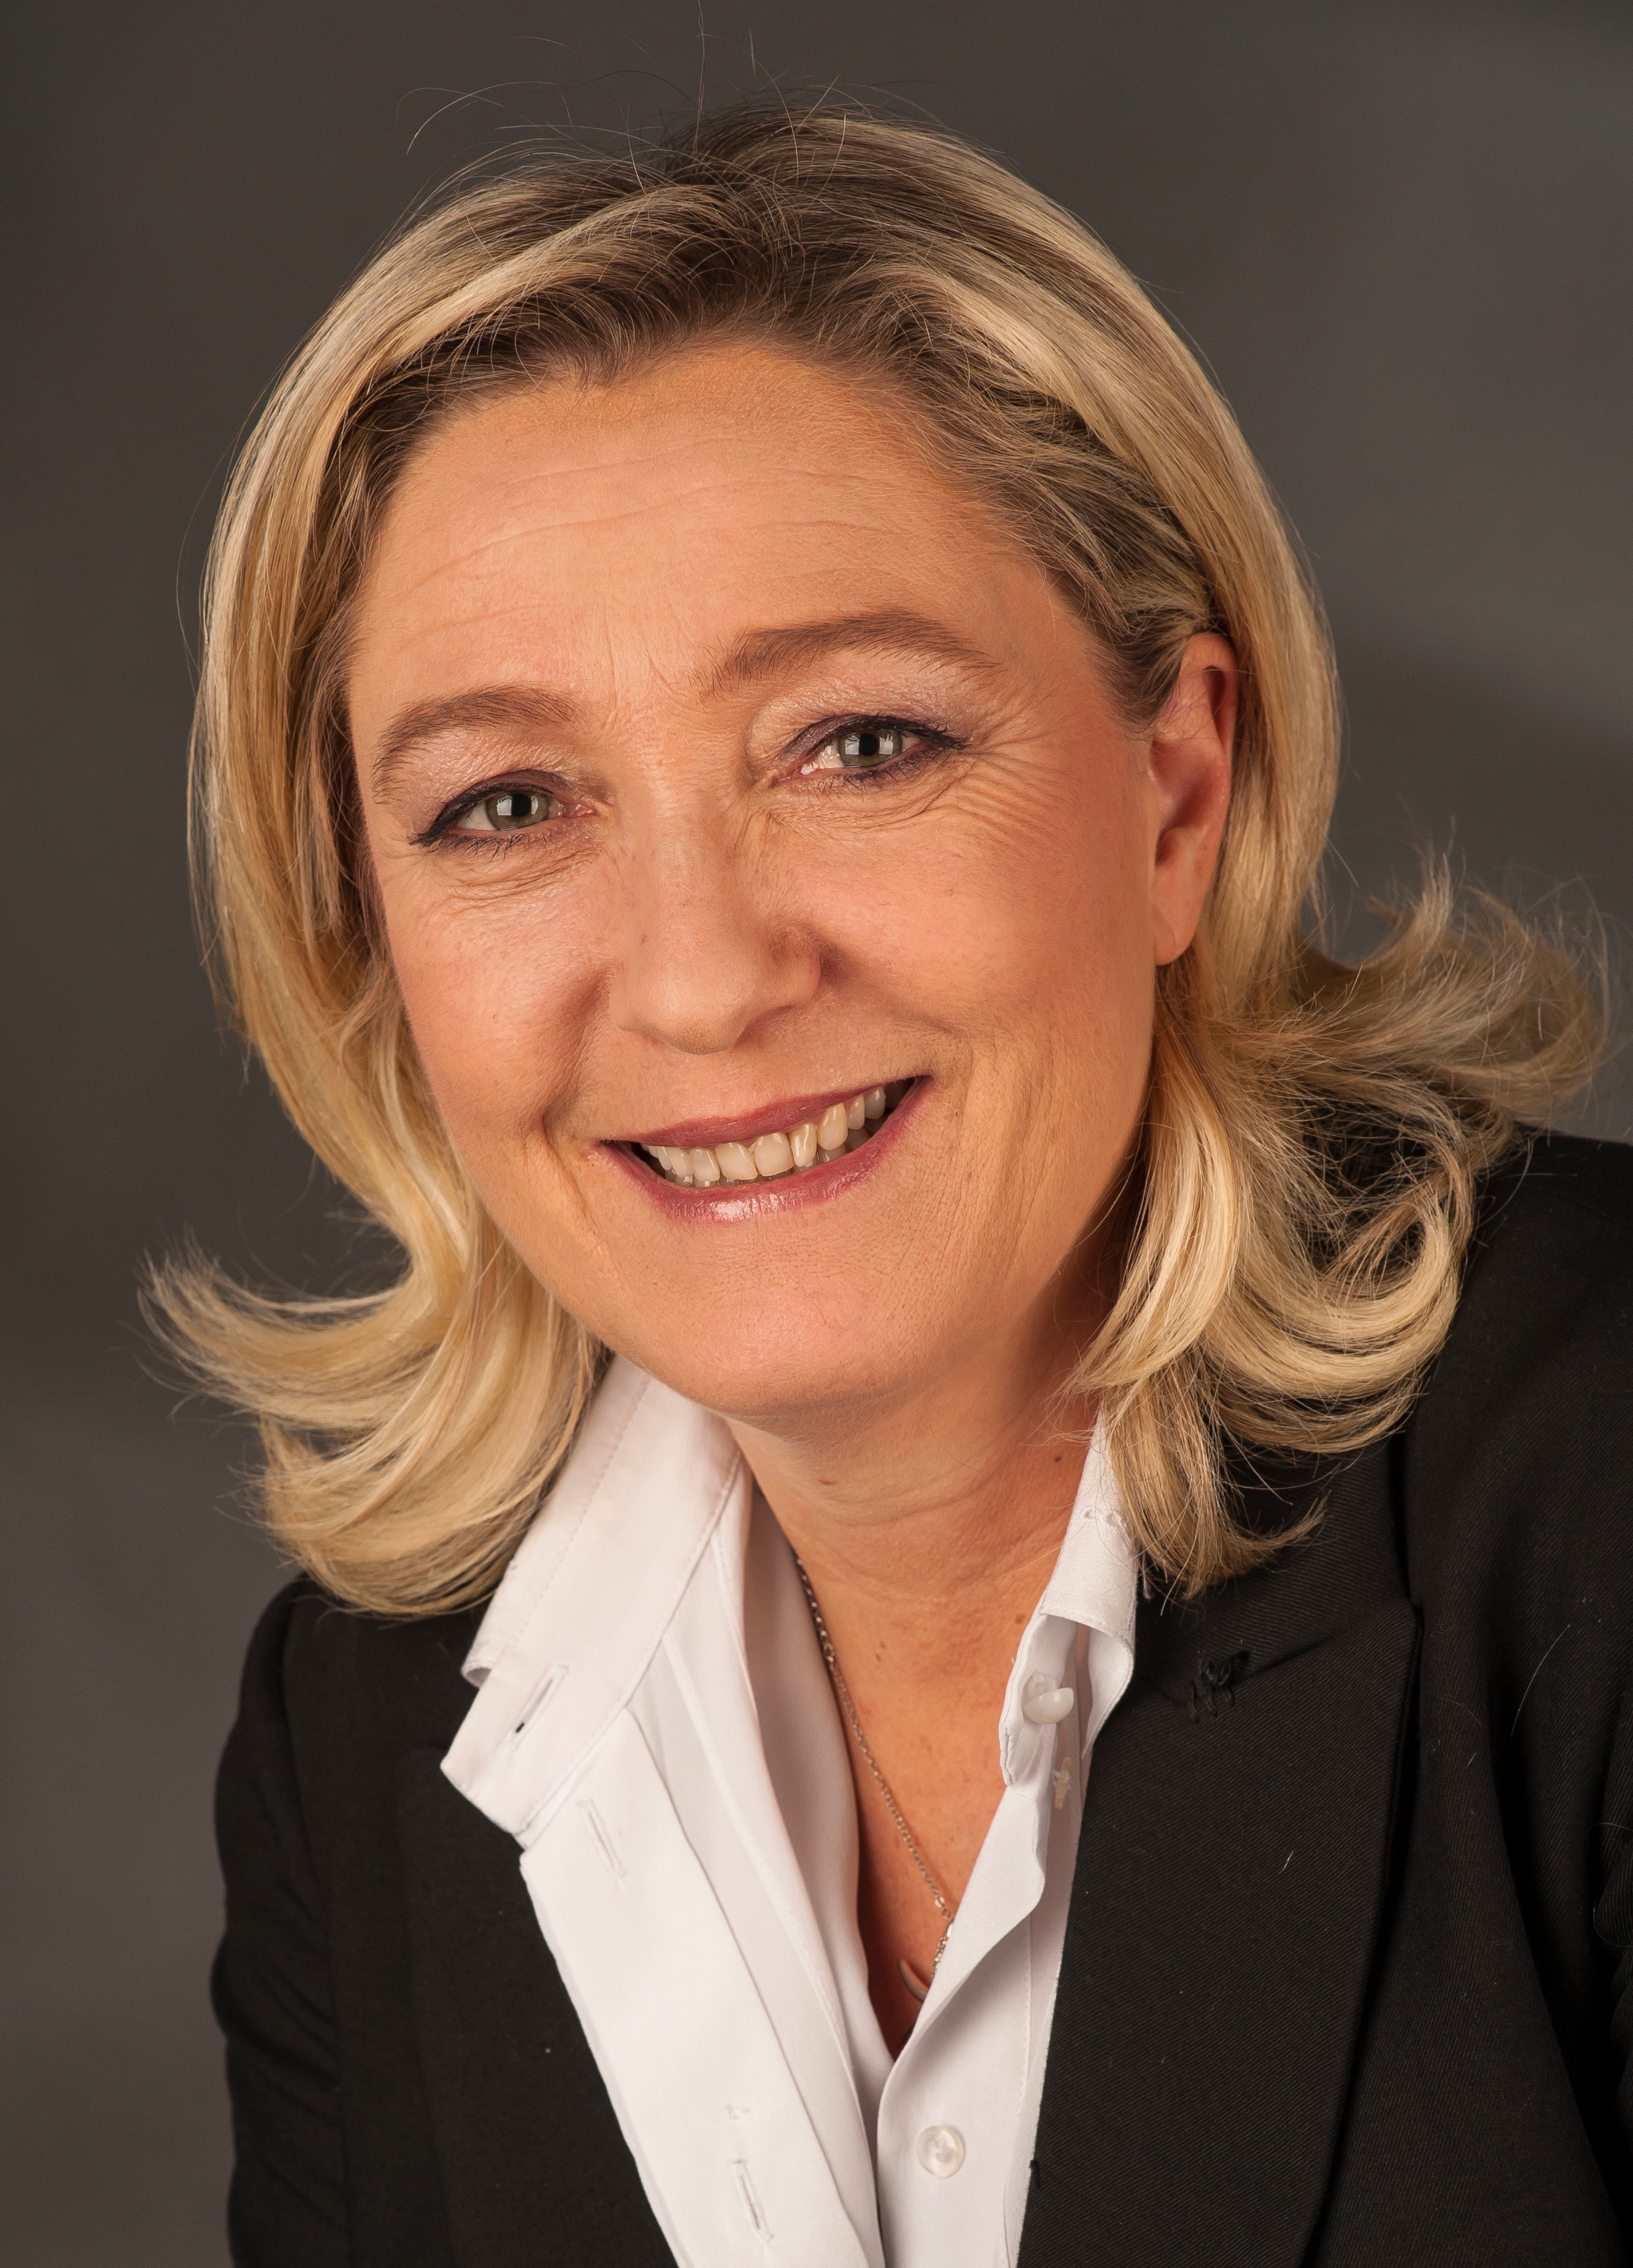 auteur Marine Le Pen de la citation Il est indéniable que les Français soient dans une meilleure situation dans les années 1960 qu'aujourd'hui en 2017. Je ne regarde pas dans le rétroviseur. Mais il n'était pas nécessaire que nous ayons terminé le progrès social depuis lors.